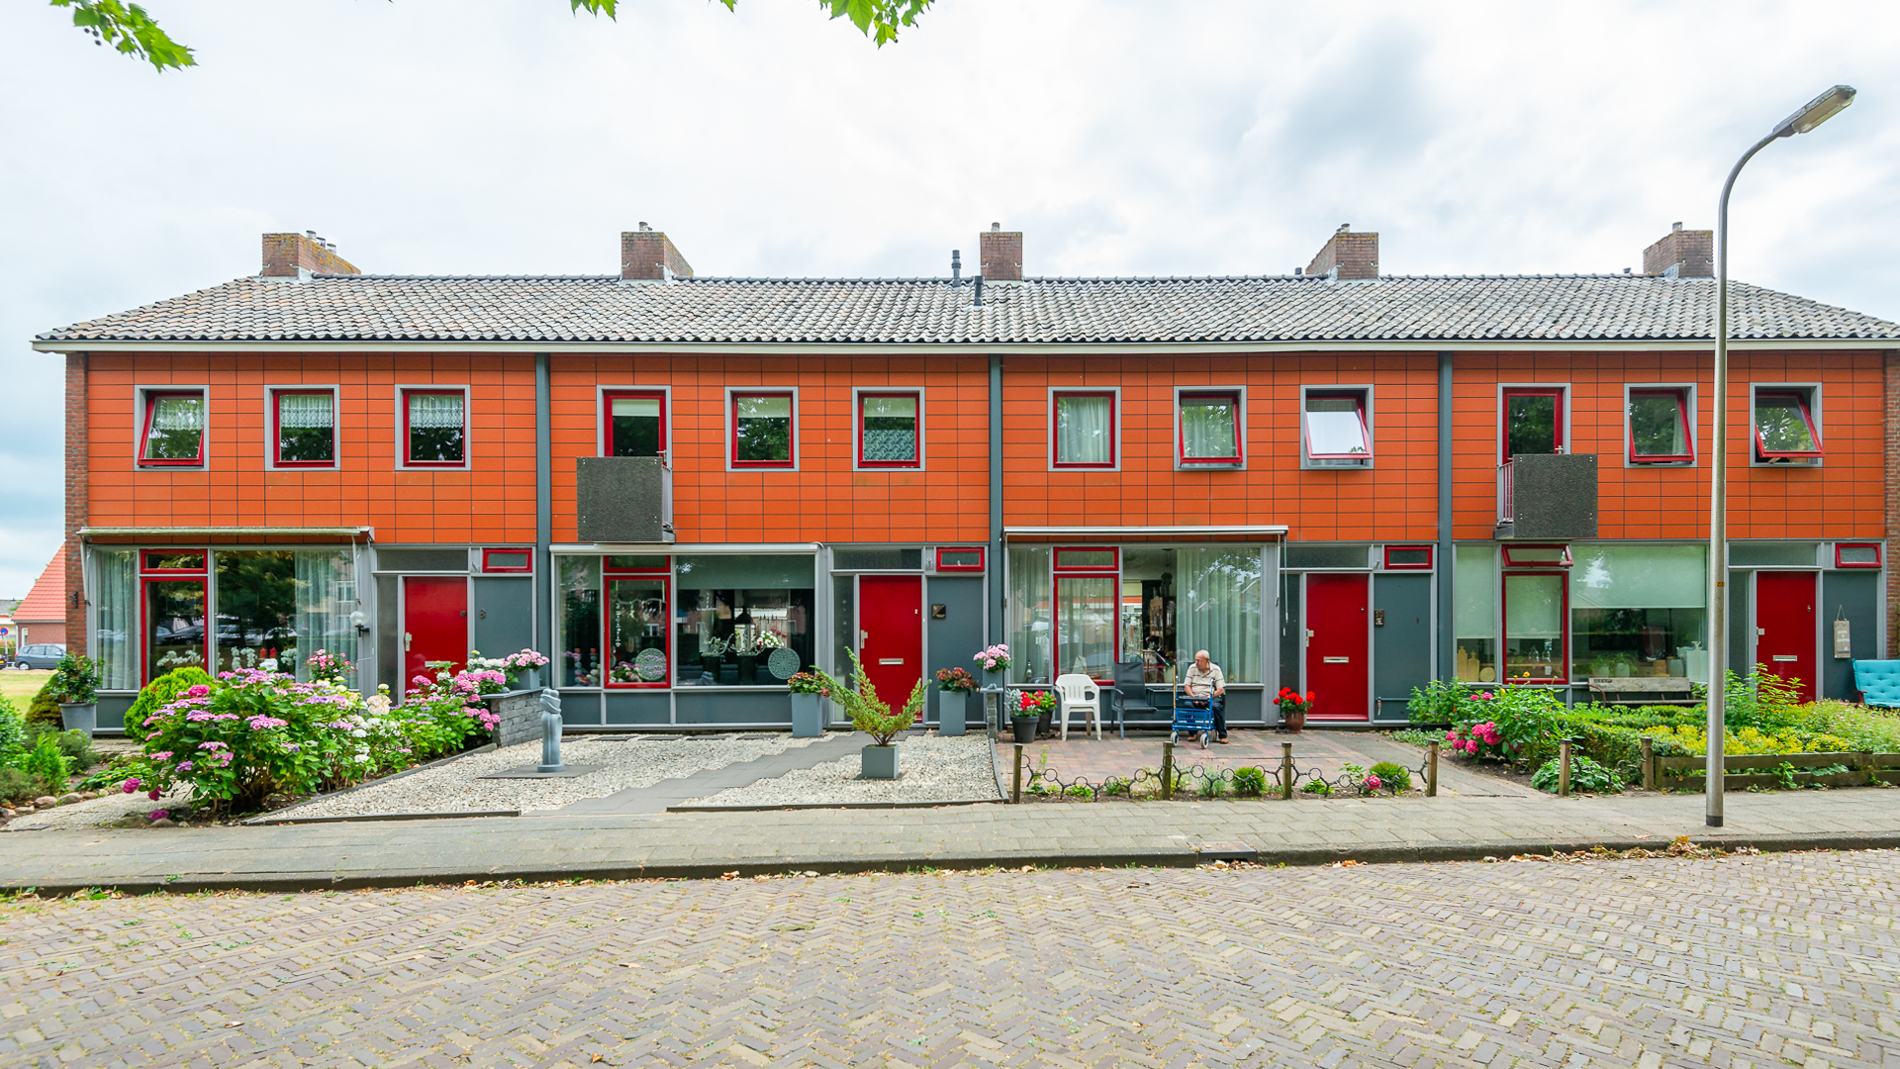 Willem Lodewijkstraat 10, 8356 EH Blokzijl, Nederland